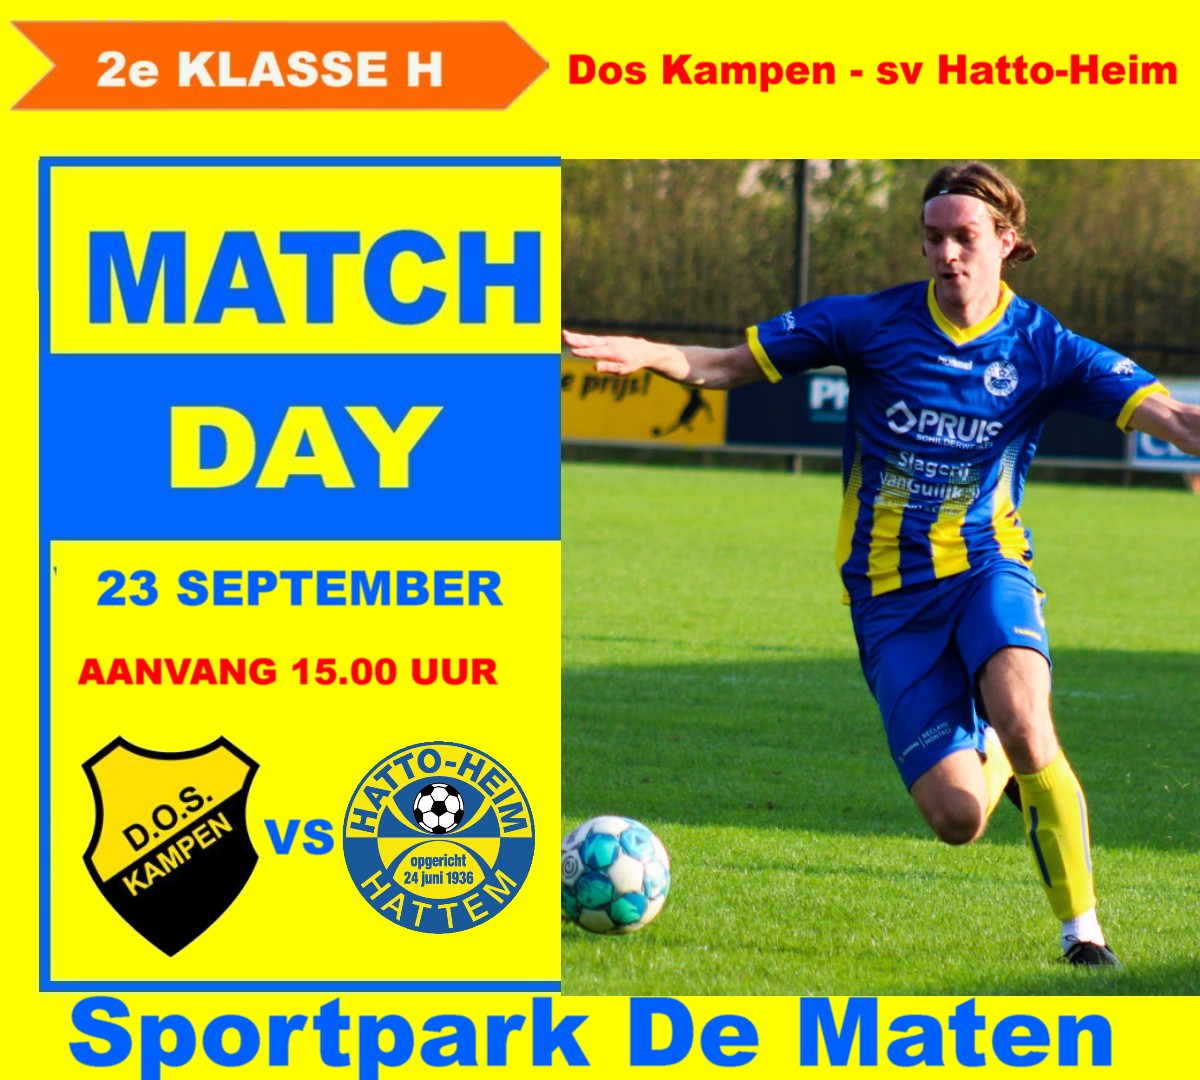 Start van het nieuwe voetbalseizoen !! Dos Kampen - sv Hatto-Heim.